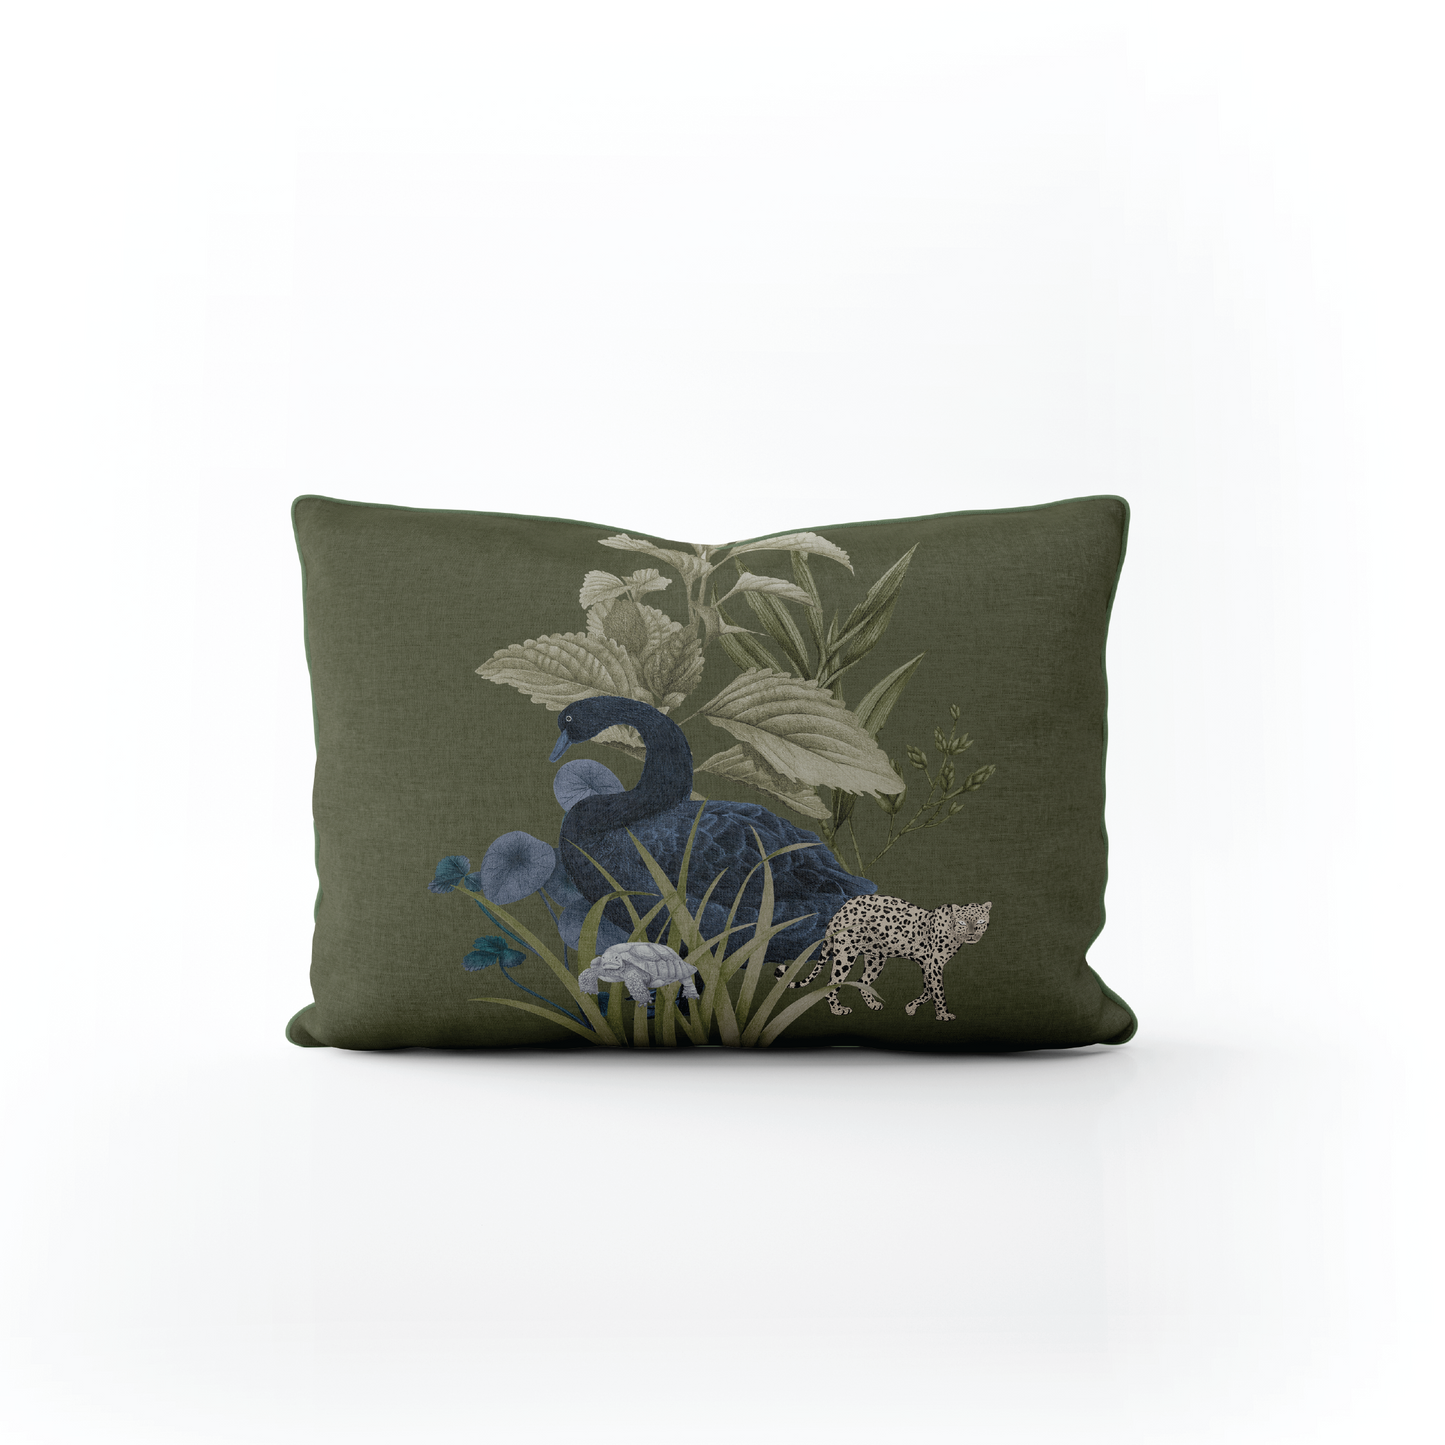 Evergreen Forest - Lumbar Pillow Cover